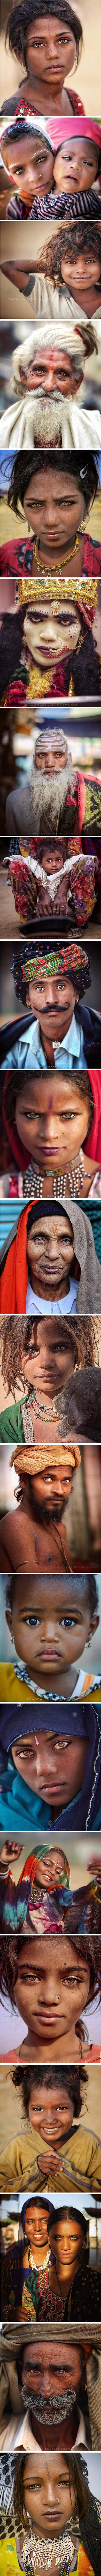 Fotografkinja zabilježila nevjerojatne ljepote Indijaca i njihove oči koje ostavljaju bez daha 